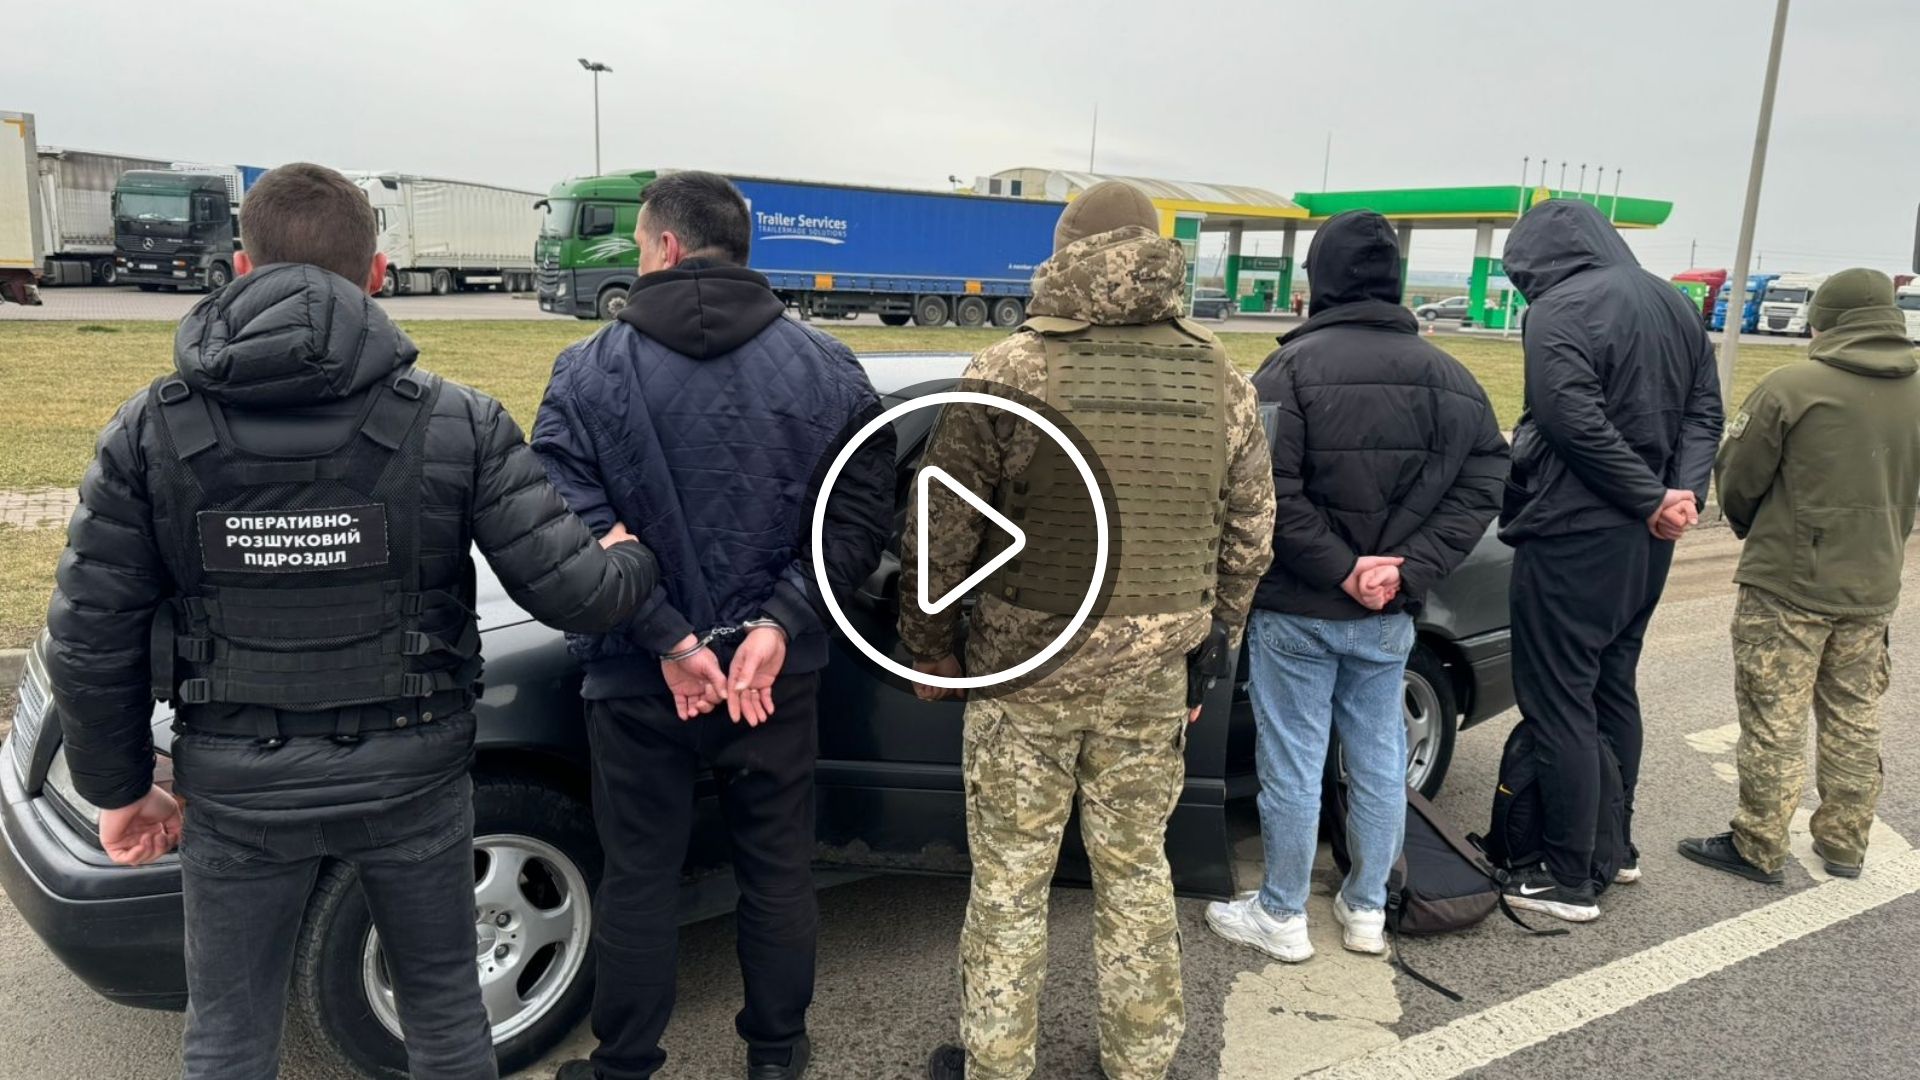 Прикордонники Чернівецького загону затримали біля кордону з Румунією двох чоловіків, які сплатили по 9000 євро за нелегальний маршрут, який вони не змогли здолати.